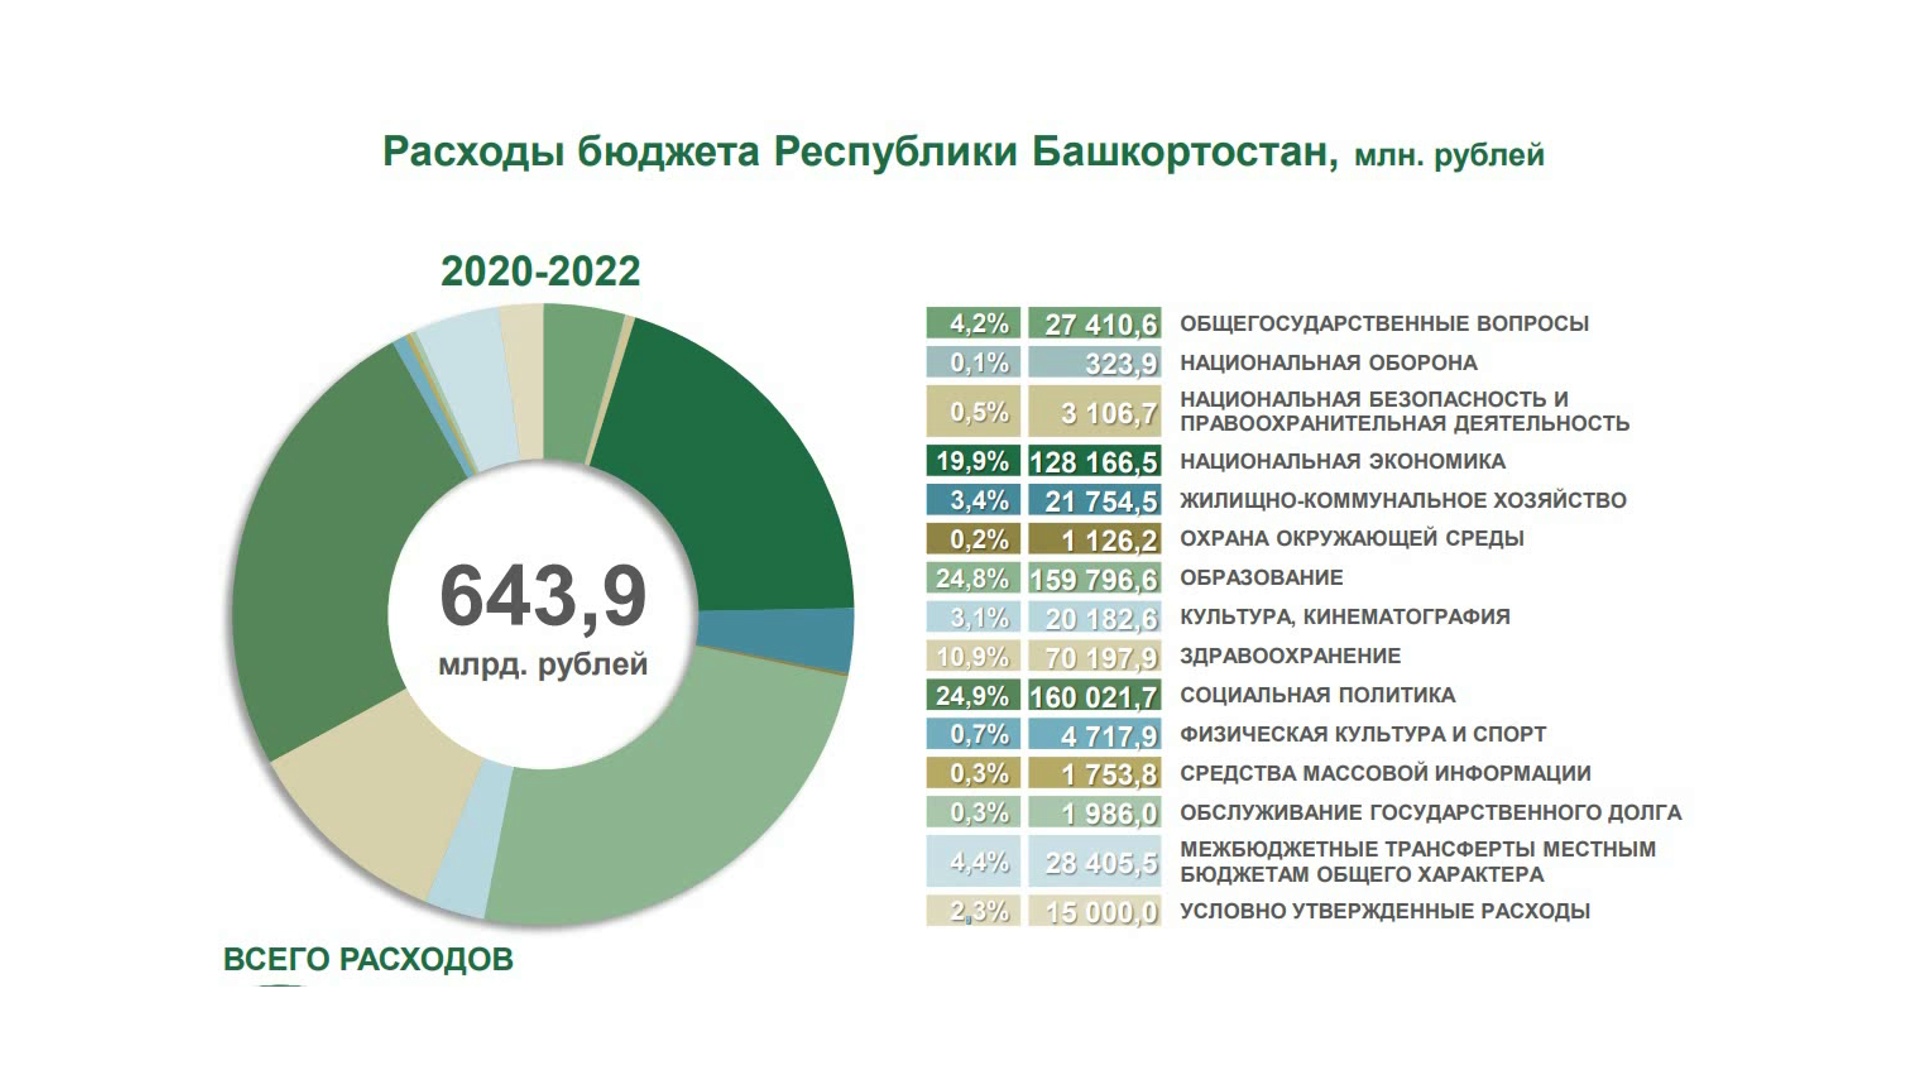 Структура расходов бюджета Республики Башкортостан